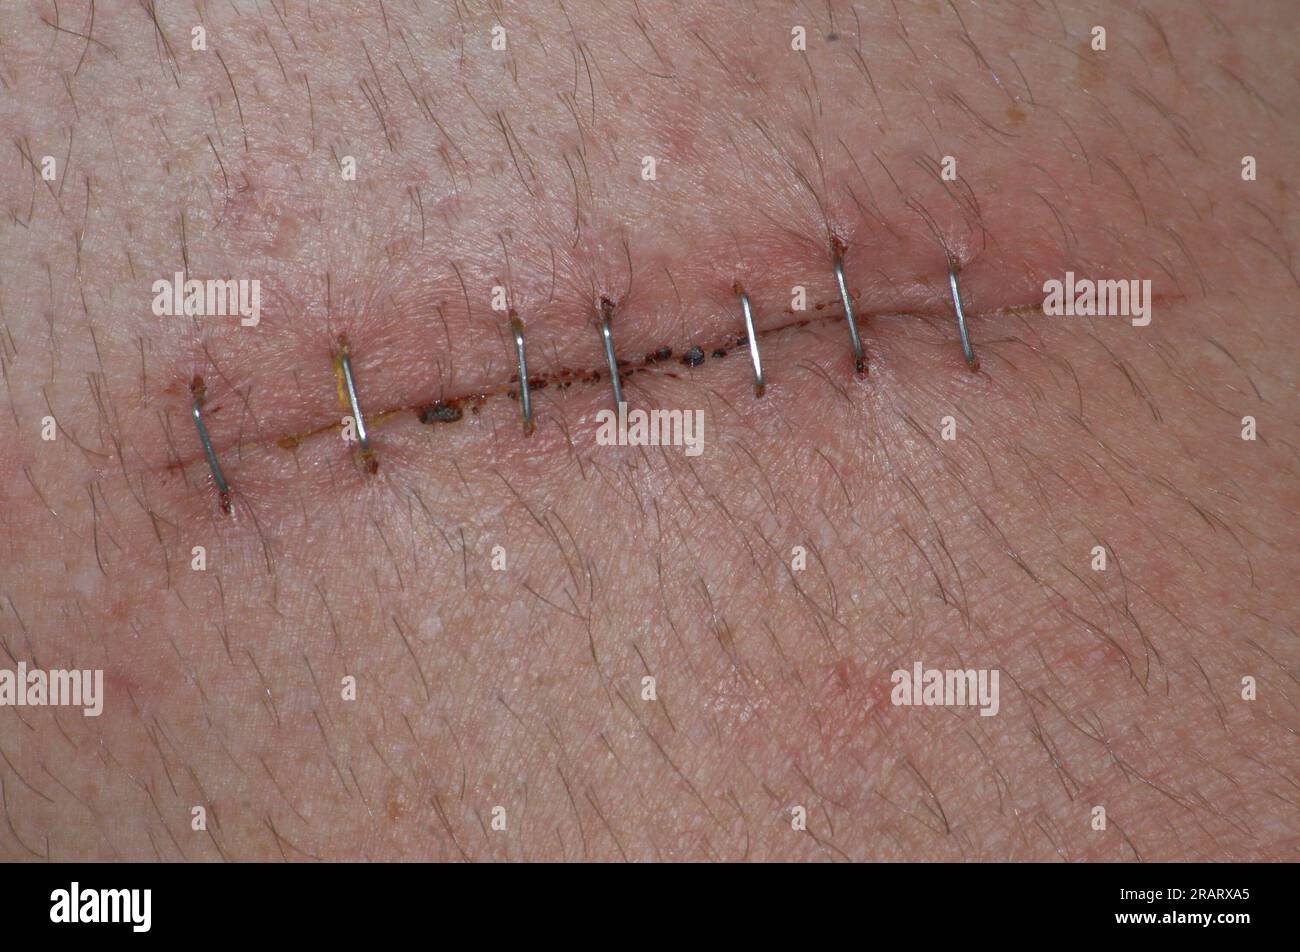 taglio profondo sulla pelle con punti metallici Foto Stock